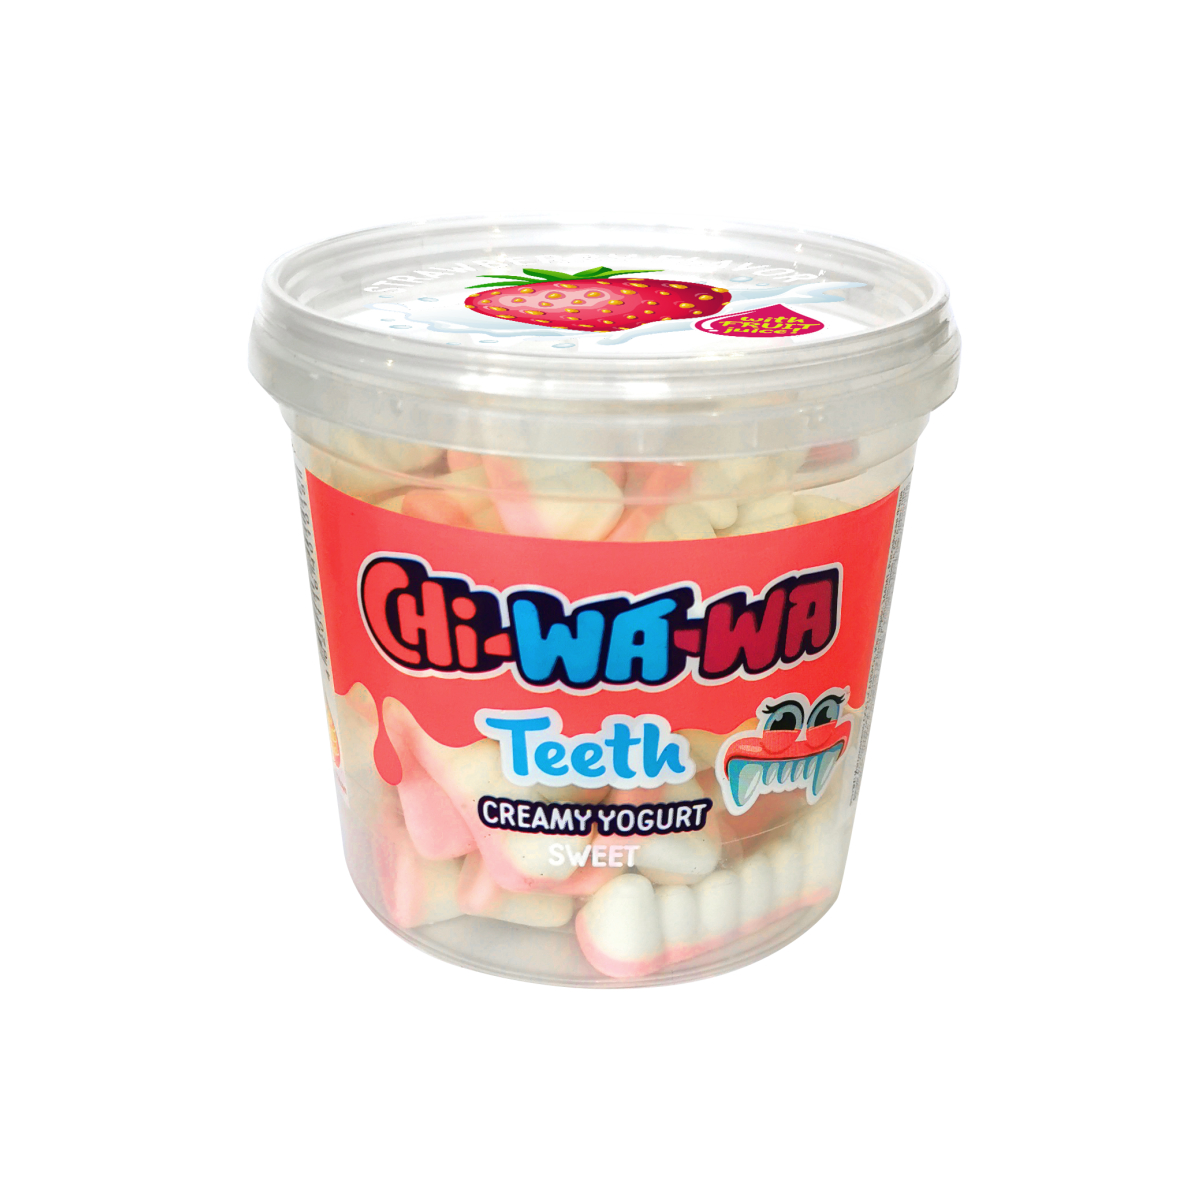 цена Жевательный мармелад Chi-wa-wa Зубки со вкусом клубники, 180 г